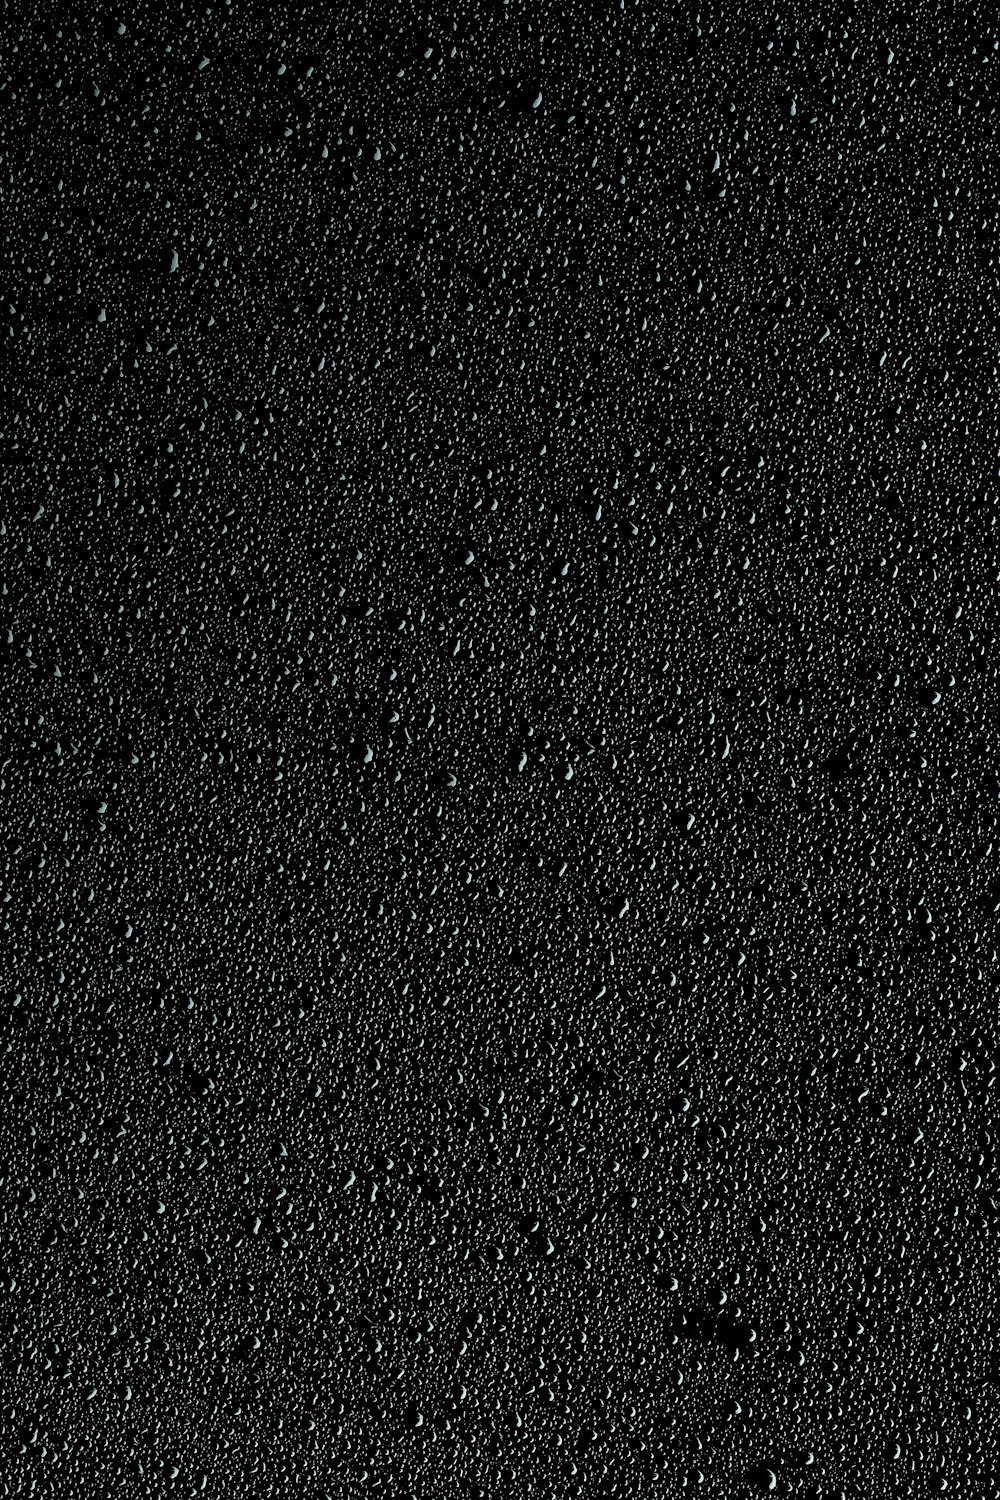 um fundo preto com pequenas bolhas de água